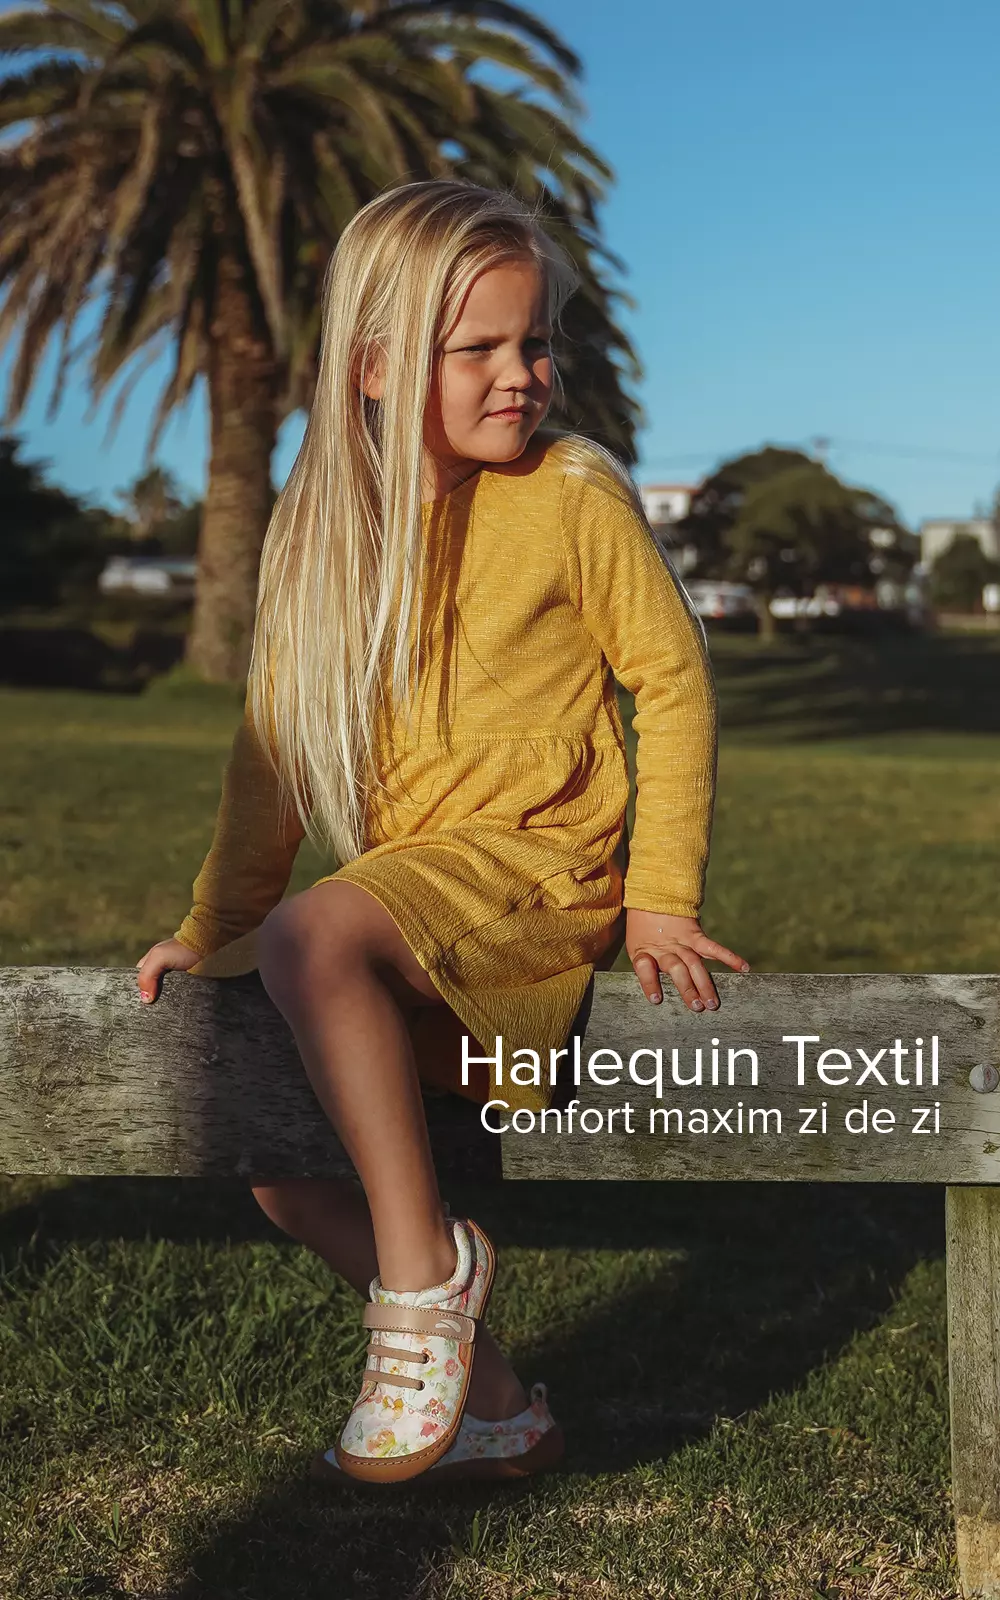 harlequin textil 02